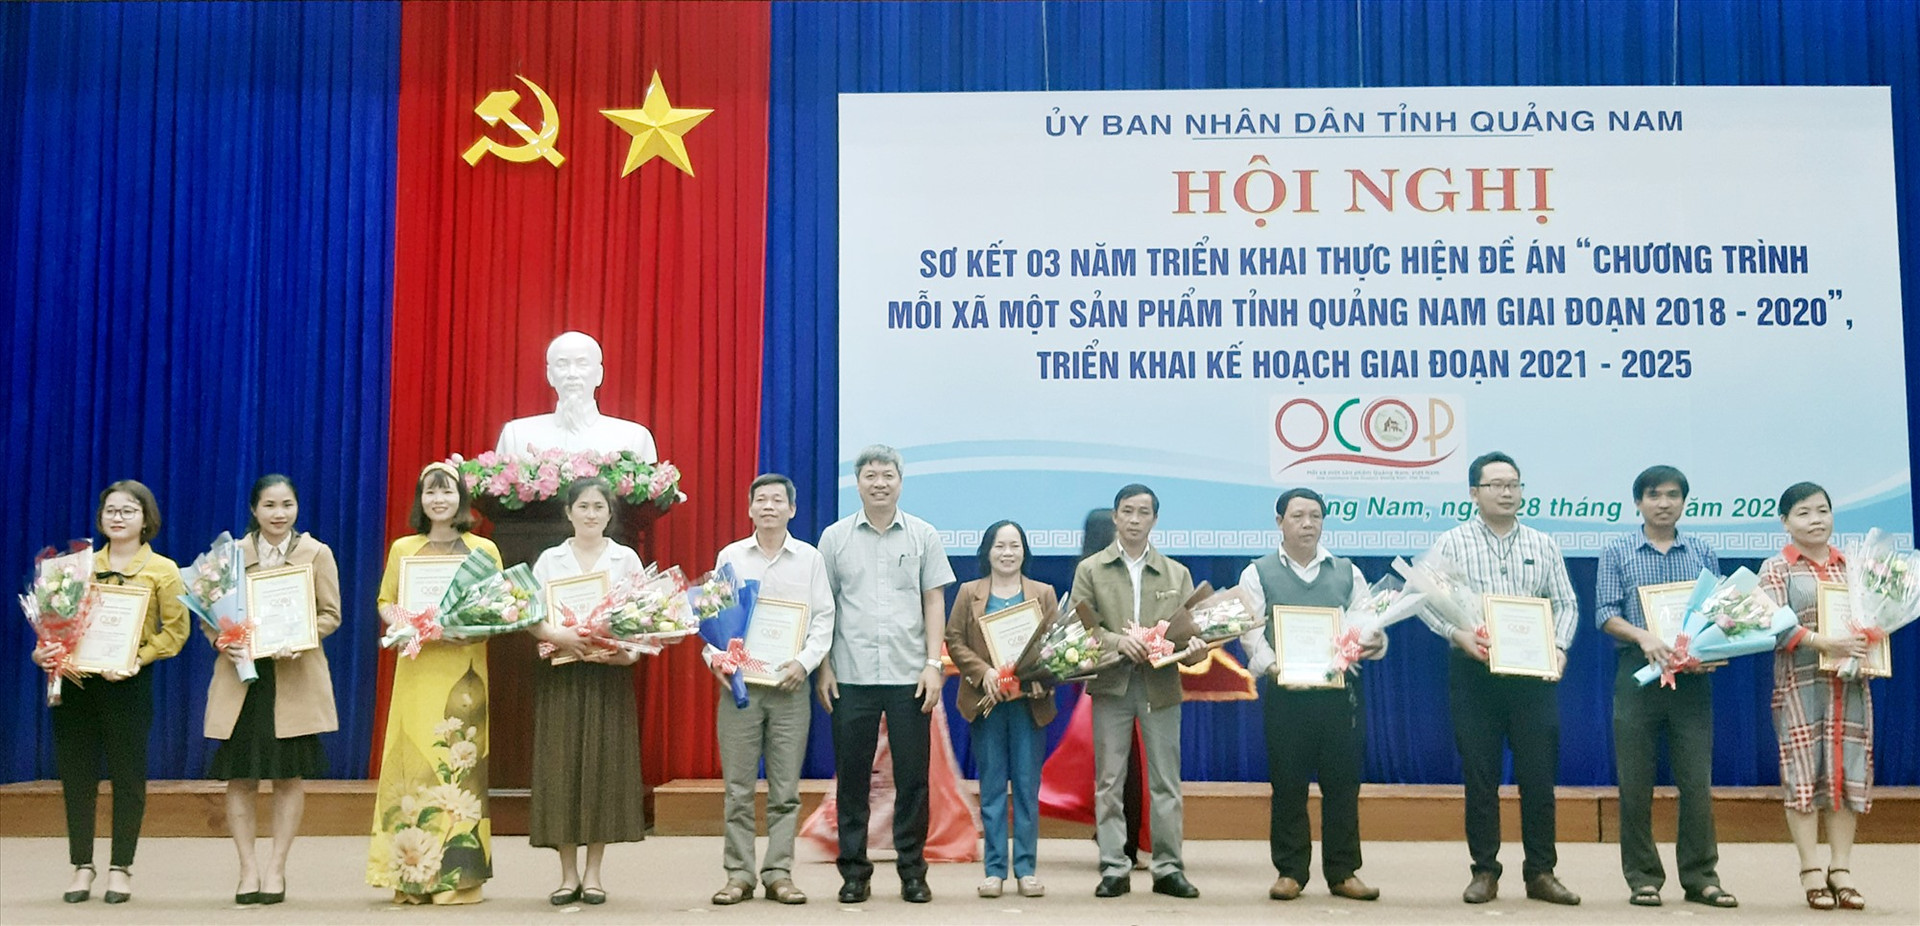 Phó Chủ tịch UBND tỉnh Hồ Quang Bửu trao bằng chứng nhận cho các chủ thể có sản phẩm đạt chuẩn OCOP cấp tỉnh năm 2020. Ảnh: VĂN SỰ